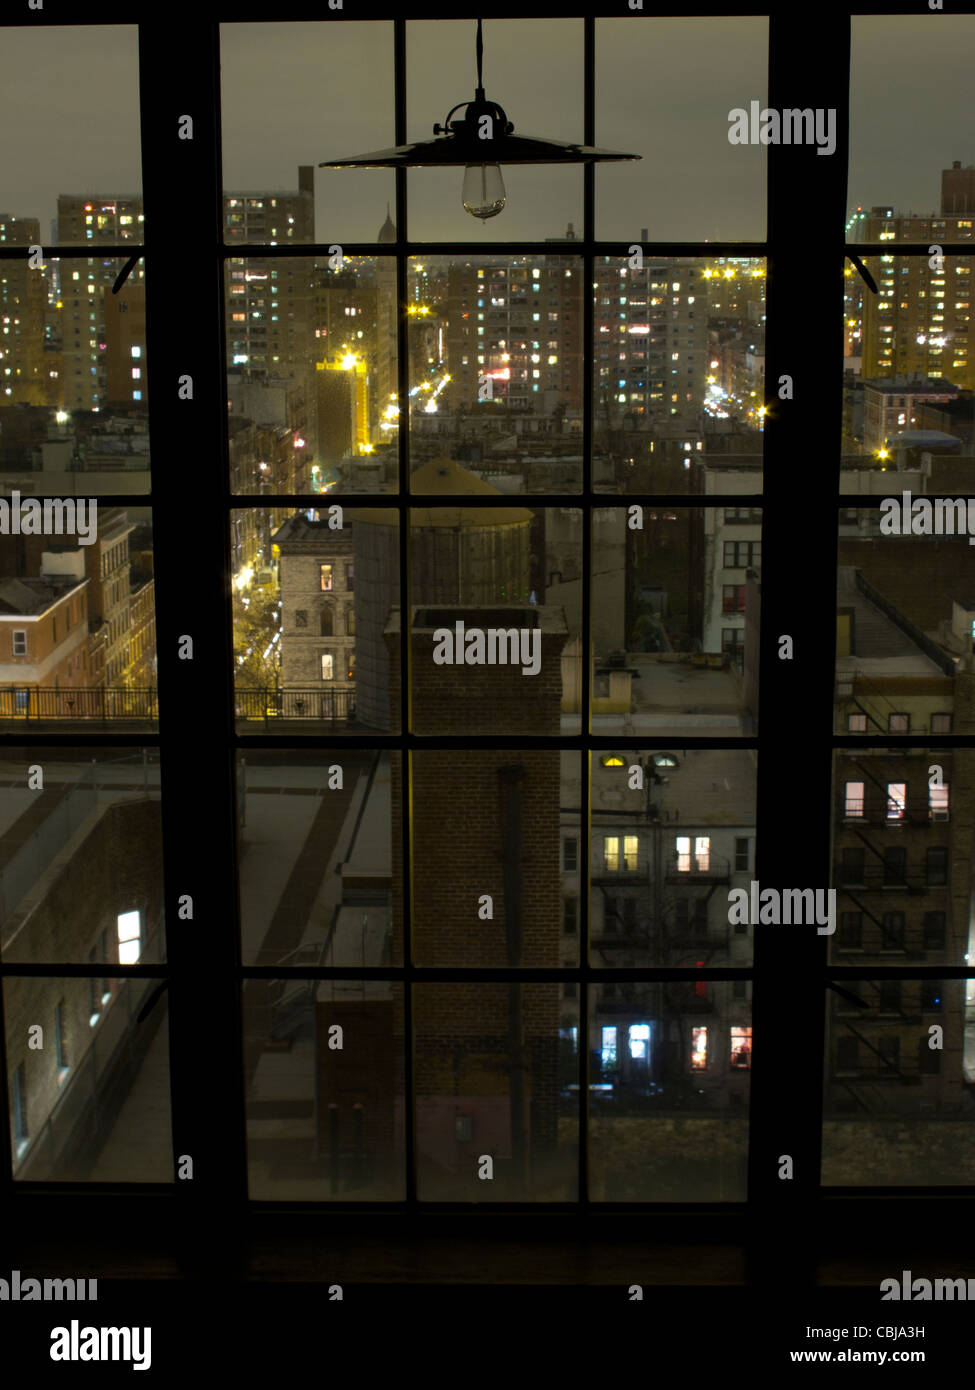 Ventana del piso 12 en la noche con vistas a NYC York City, Nueva York, EE.UU. Foto de stock